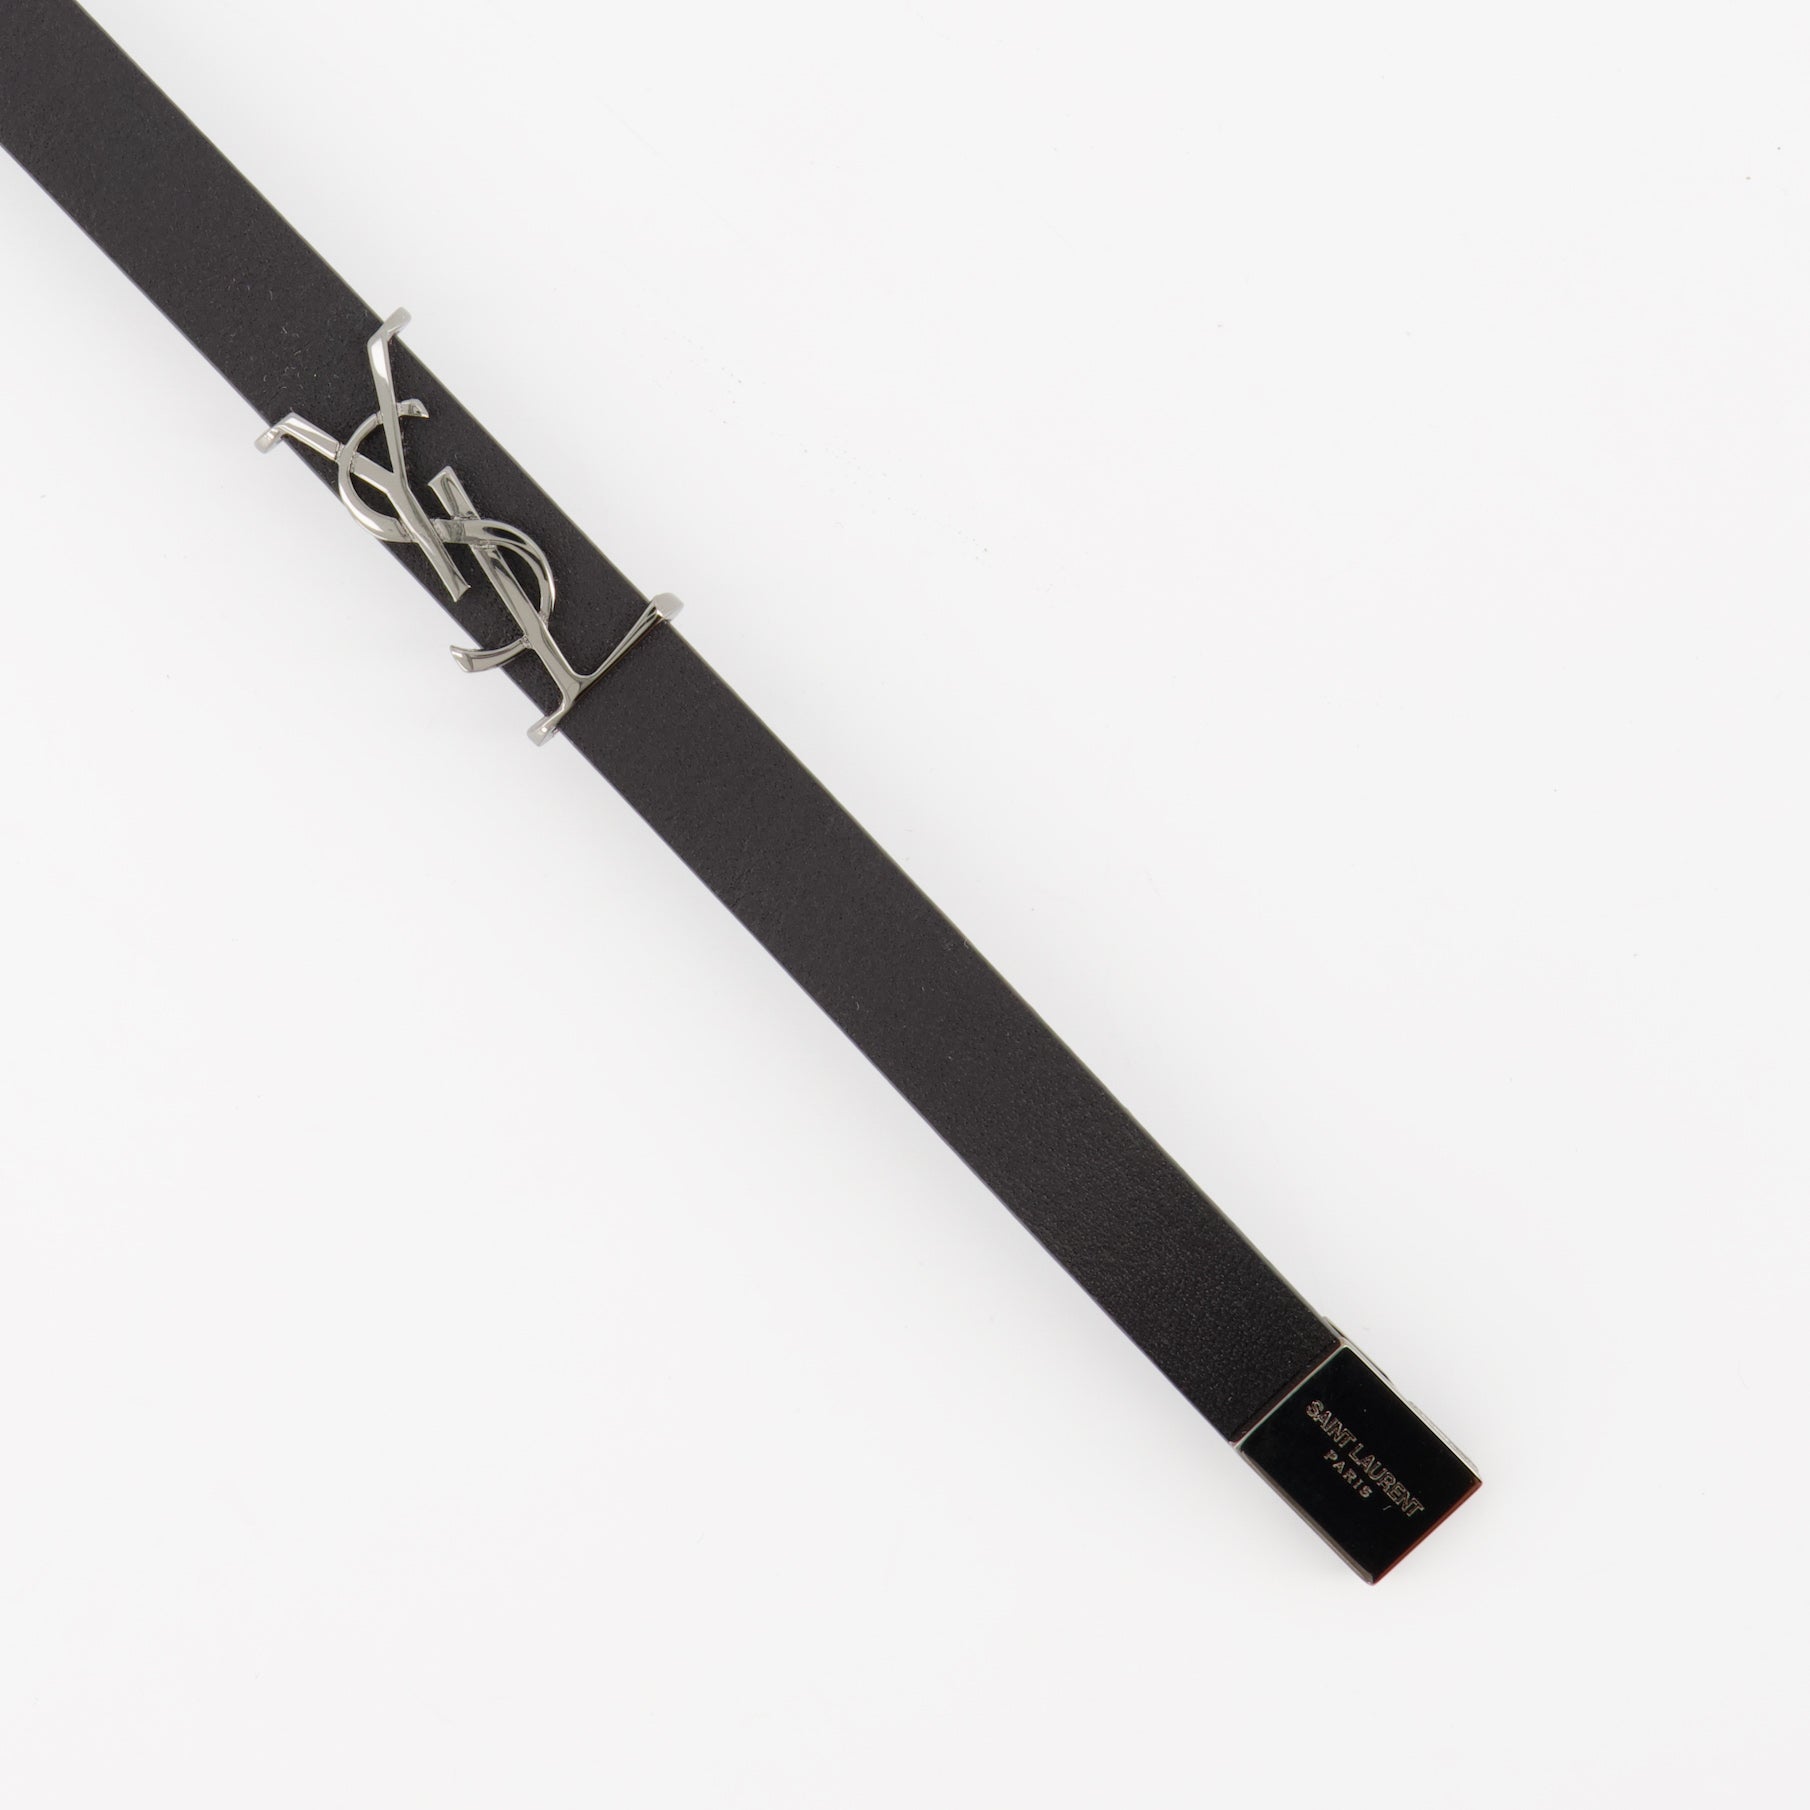 Cassandre bracelet in black leather